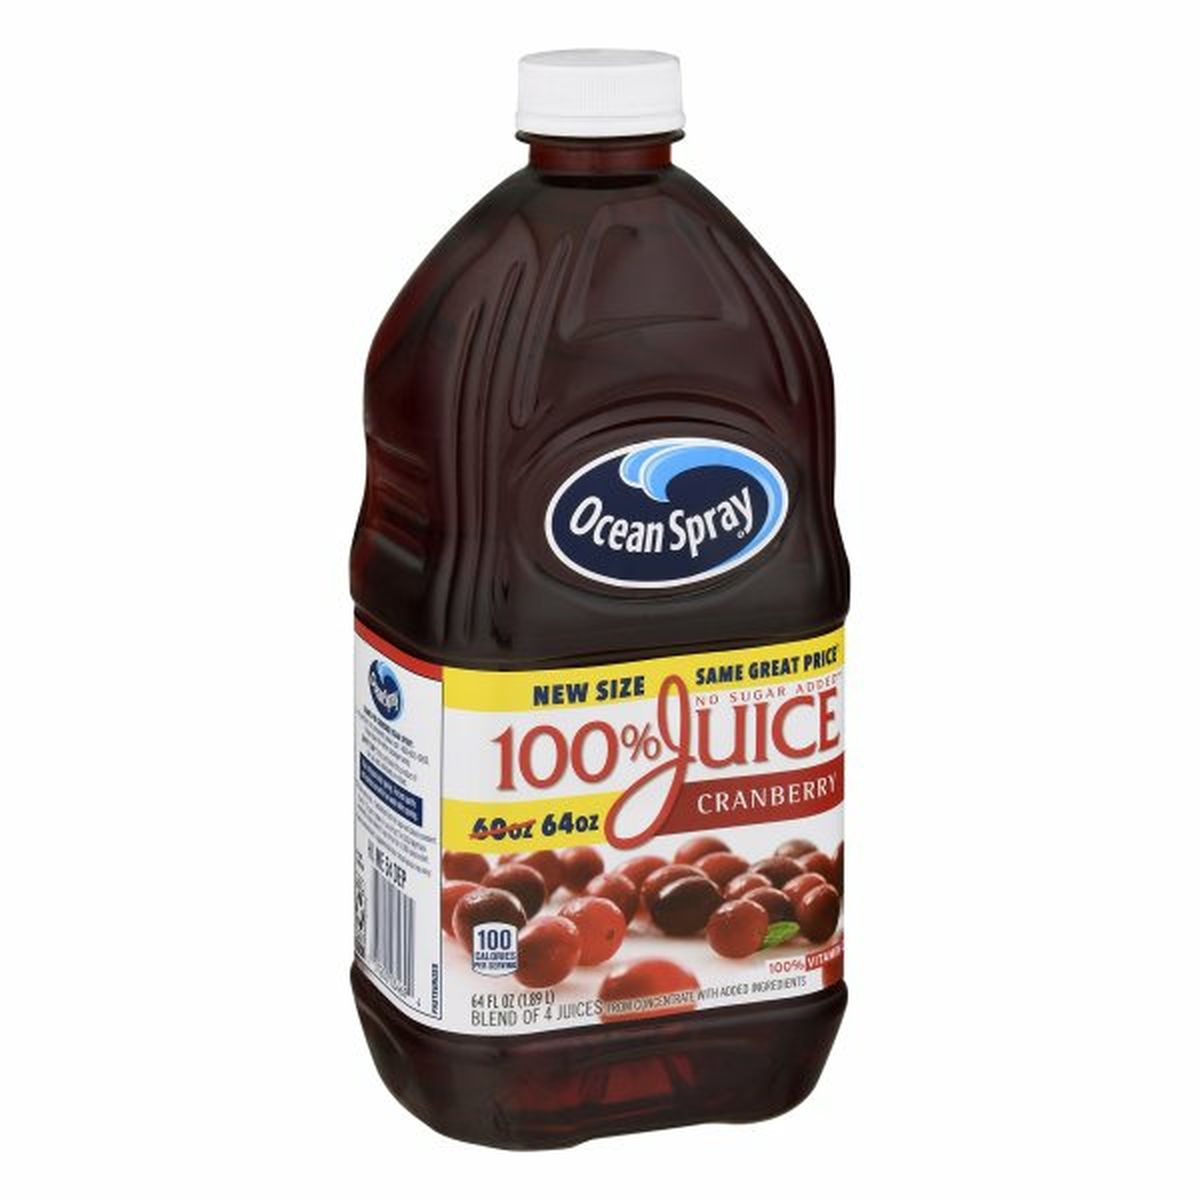 Calories in Ocean Spray 100% Juice, Cranberry Flavor